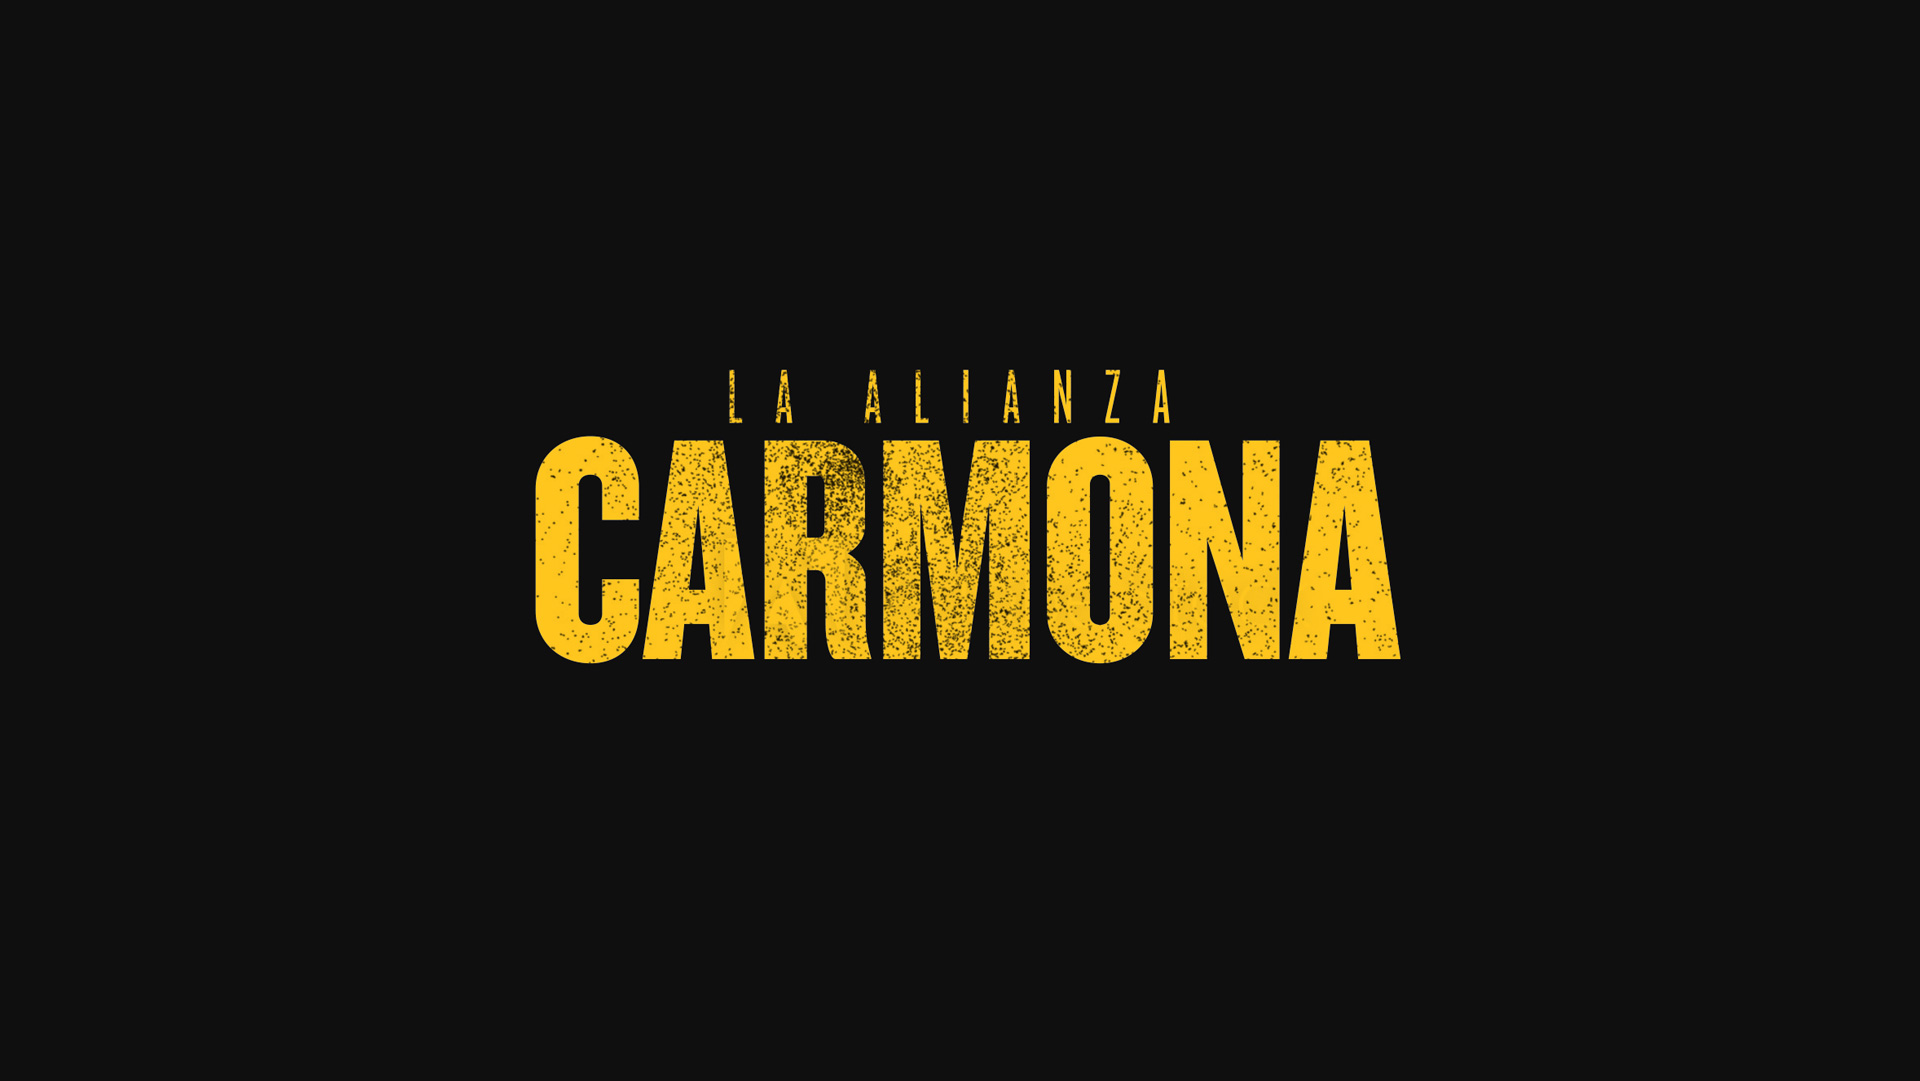 Alianza Carmona